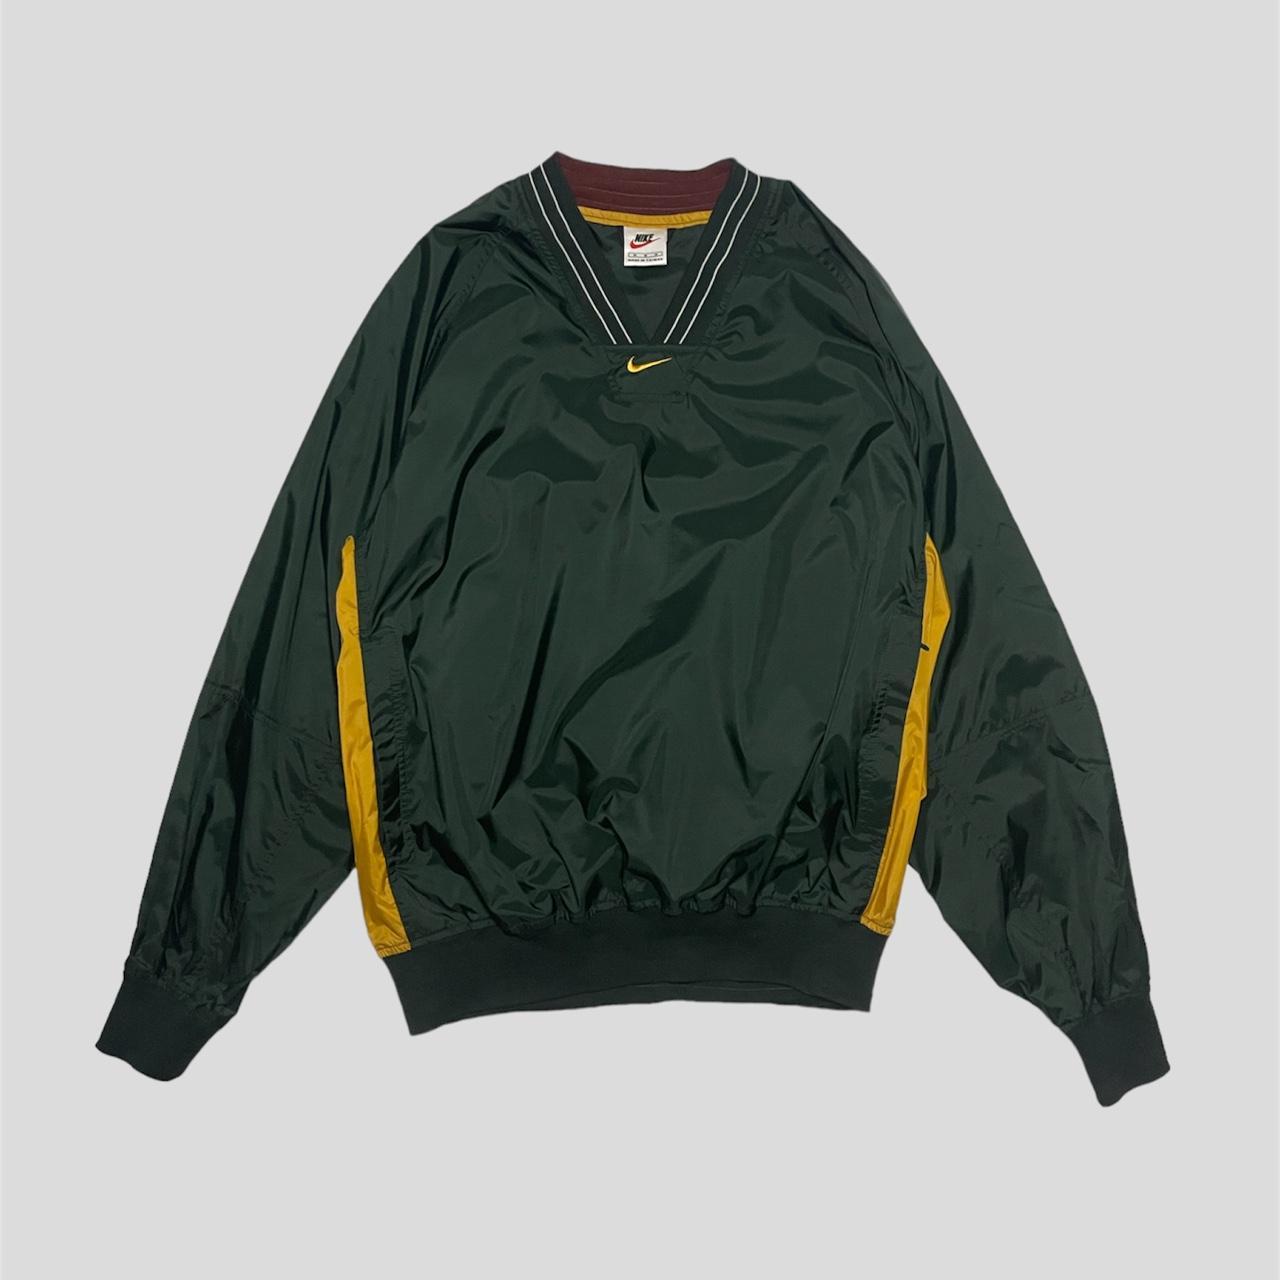 90’s Vintage Nike Jacket Super rare color, no... - Depop